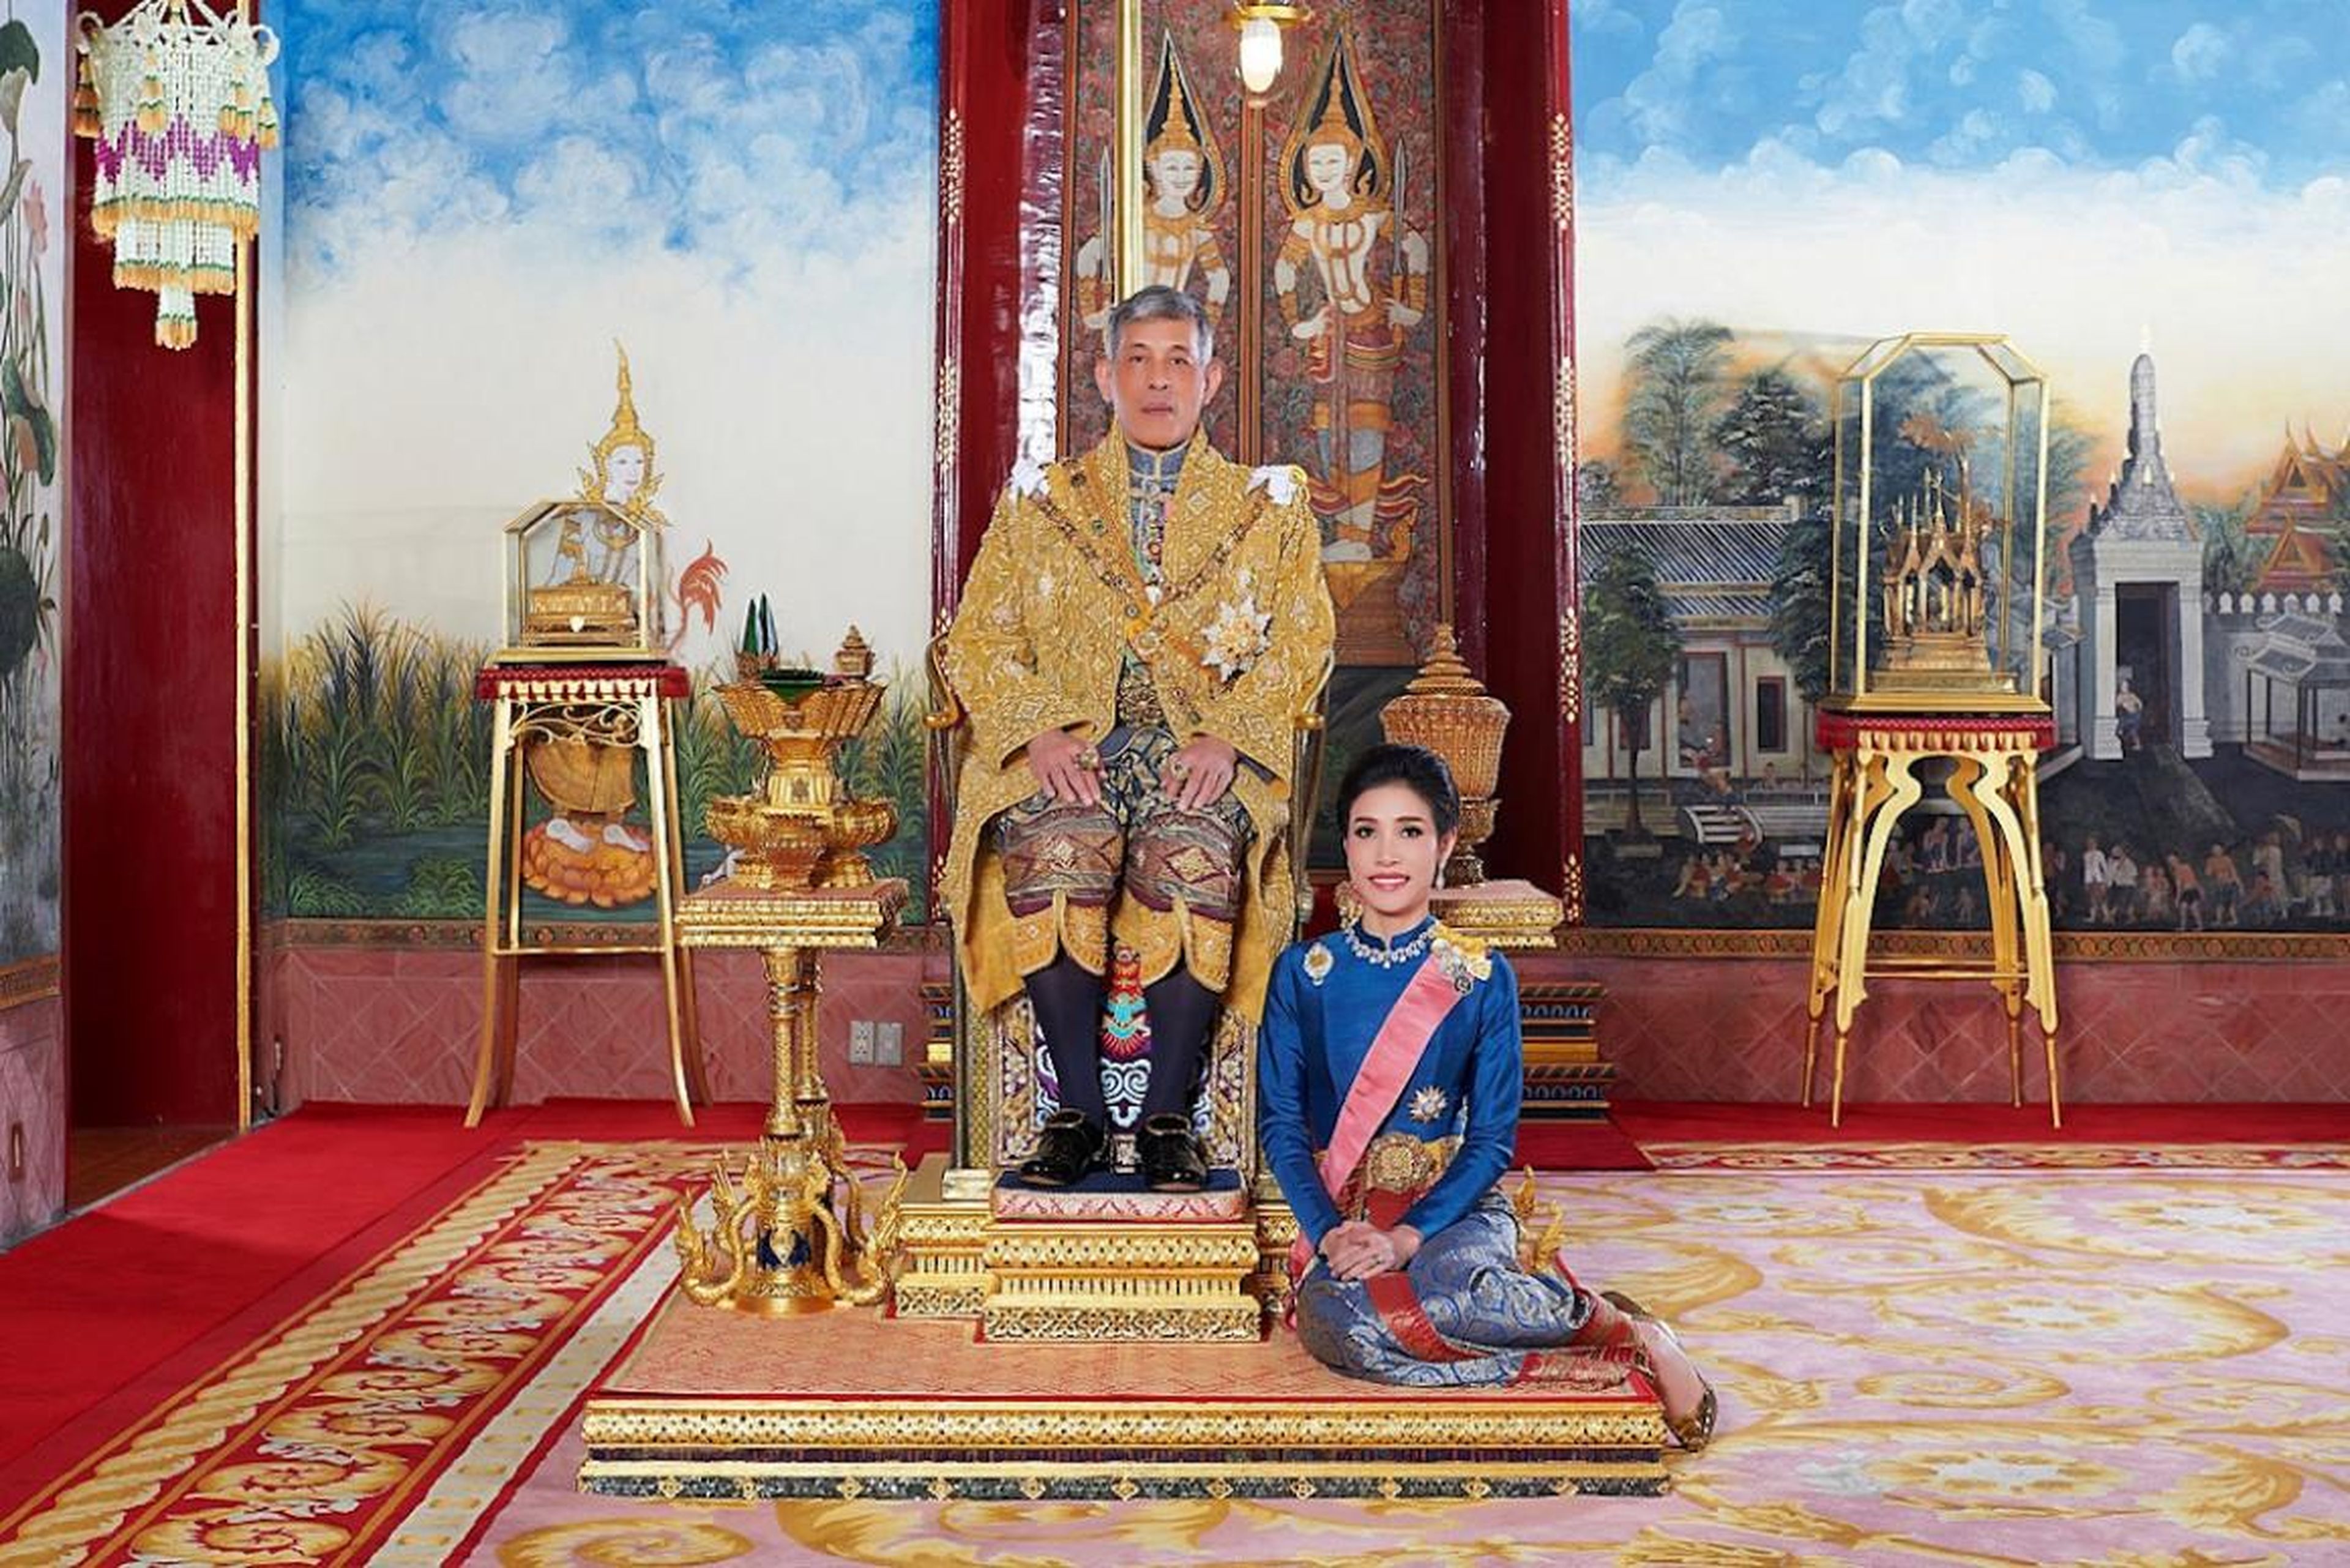 El rey Maha Vajiralongkorn y su consorte real, Sineenat Wongvajirapakdi, a quien le fueron arrebatados sus títulos este año.